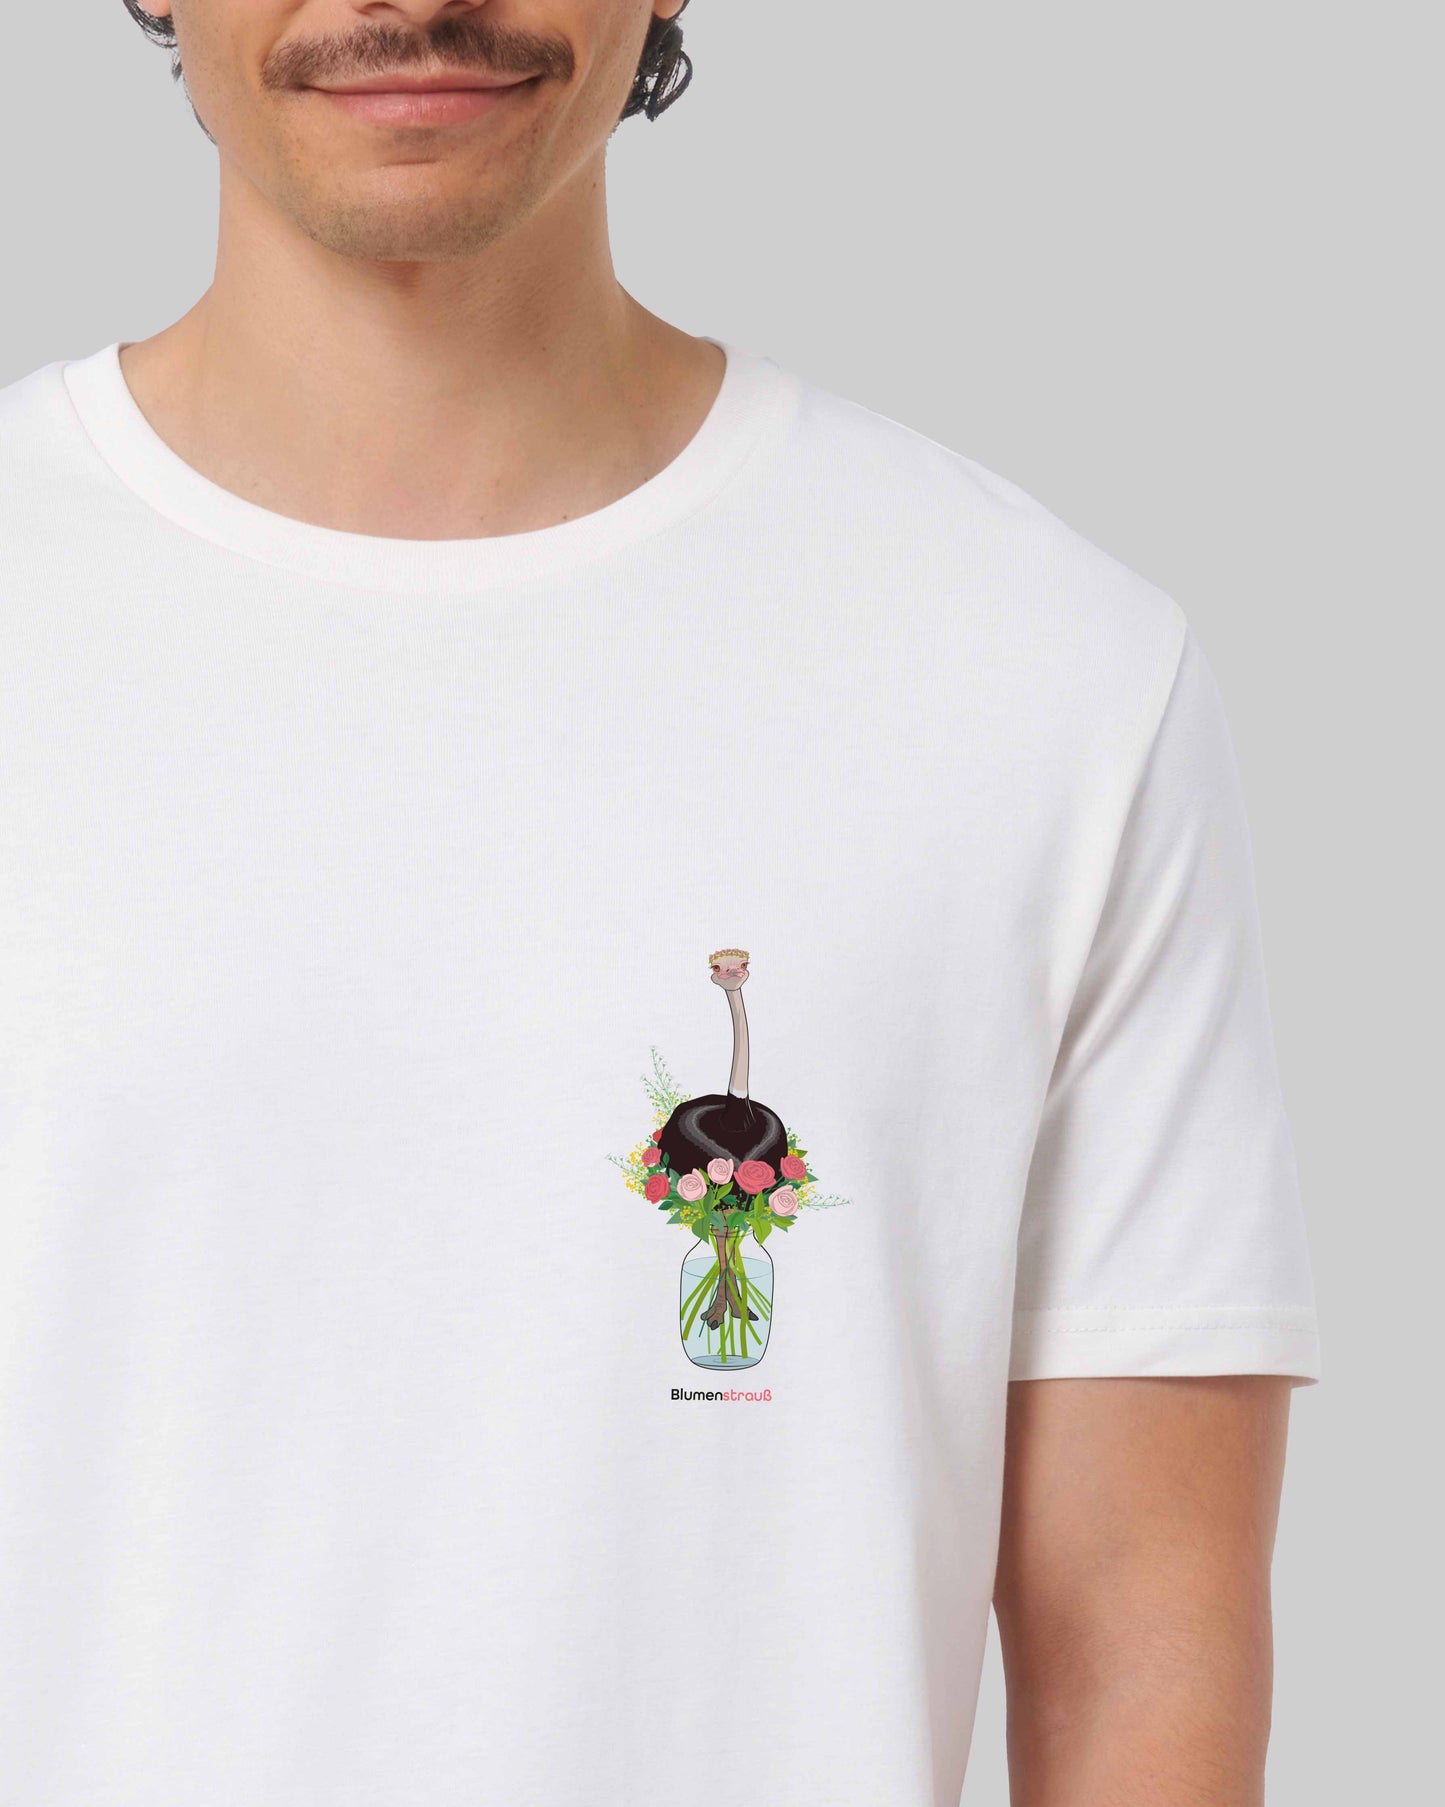 EINHORST® unisex organic Shirt in Weiß mit dem Motiv "Blumenstrauß", Bild von männlicher Person mit Shirt